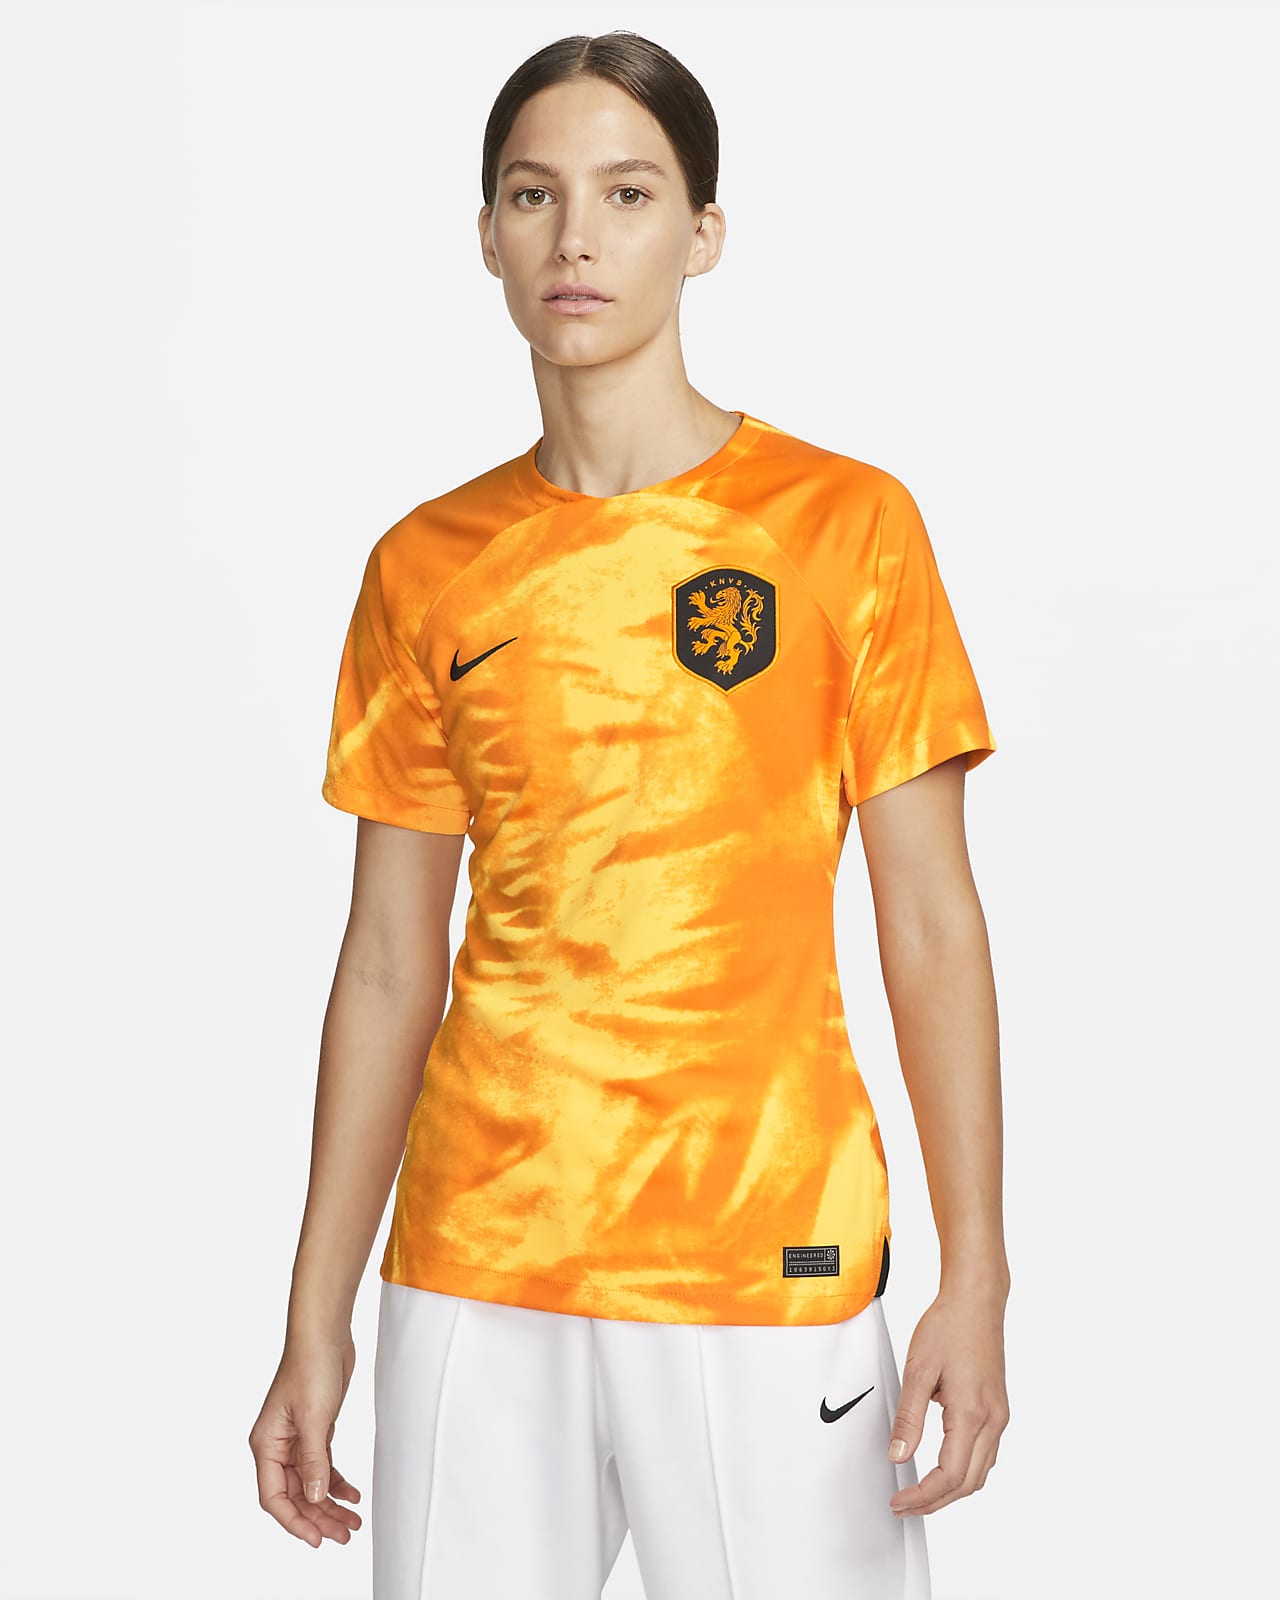 Antagonist Eenzaamheid Ontdooien, ontdooien, vorst ontdooien Nederland 2022/23 Stadium Thuis Nike Dri-FIT voetbalshirt voor dames. Nike  NL